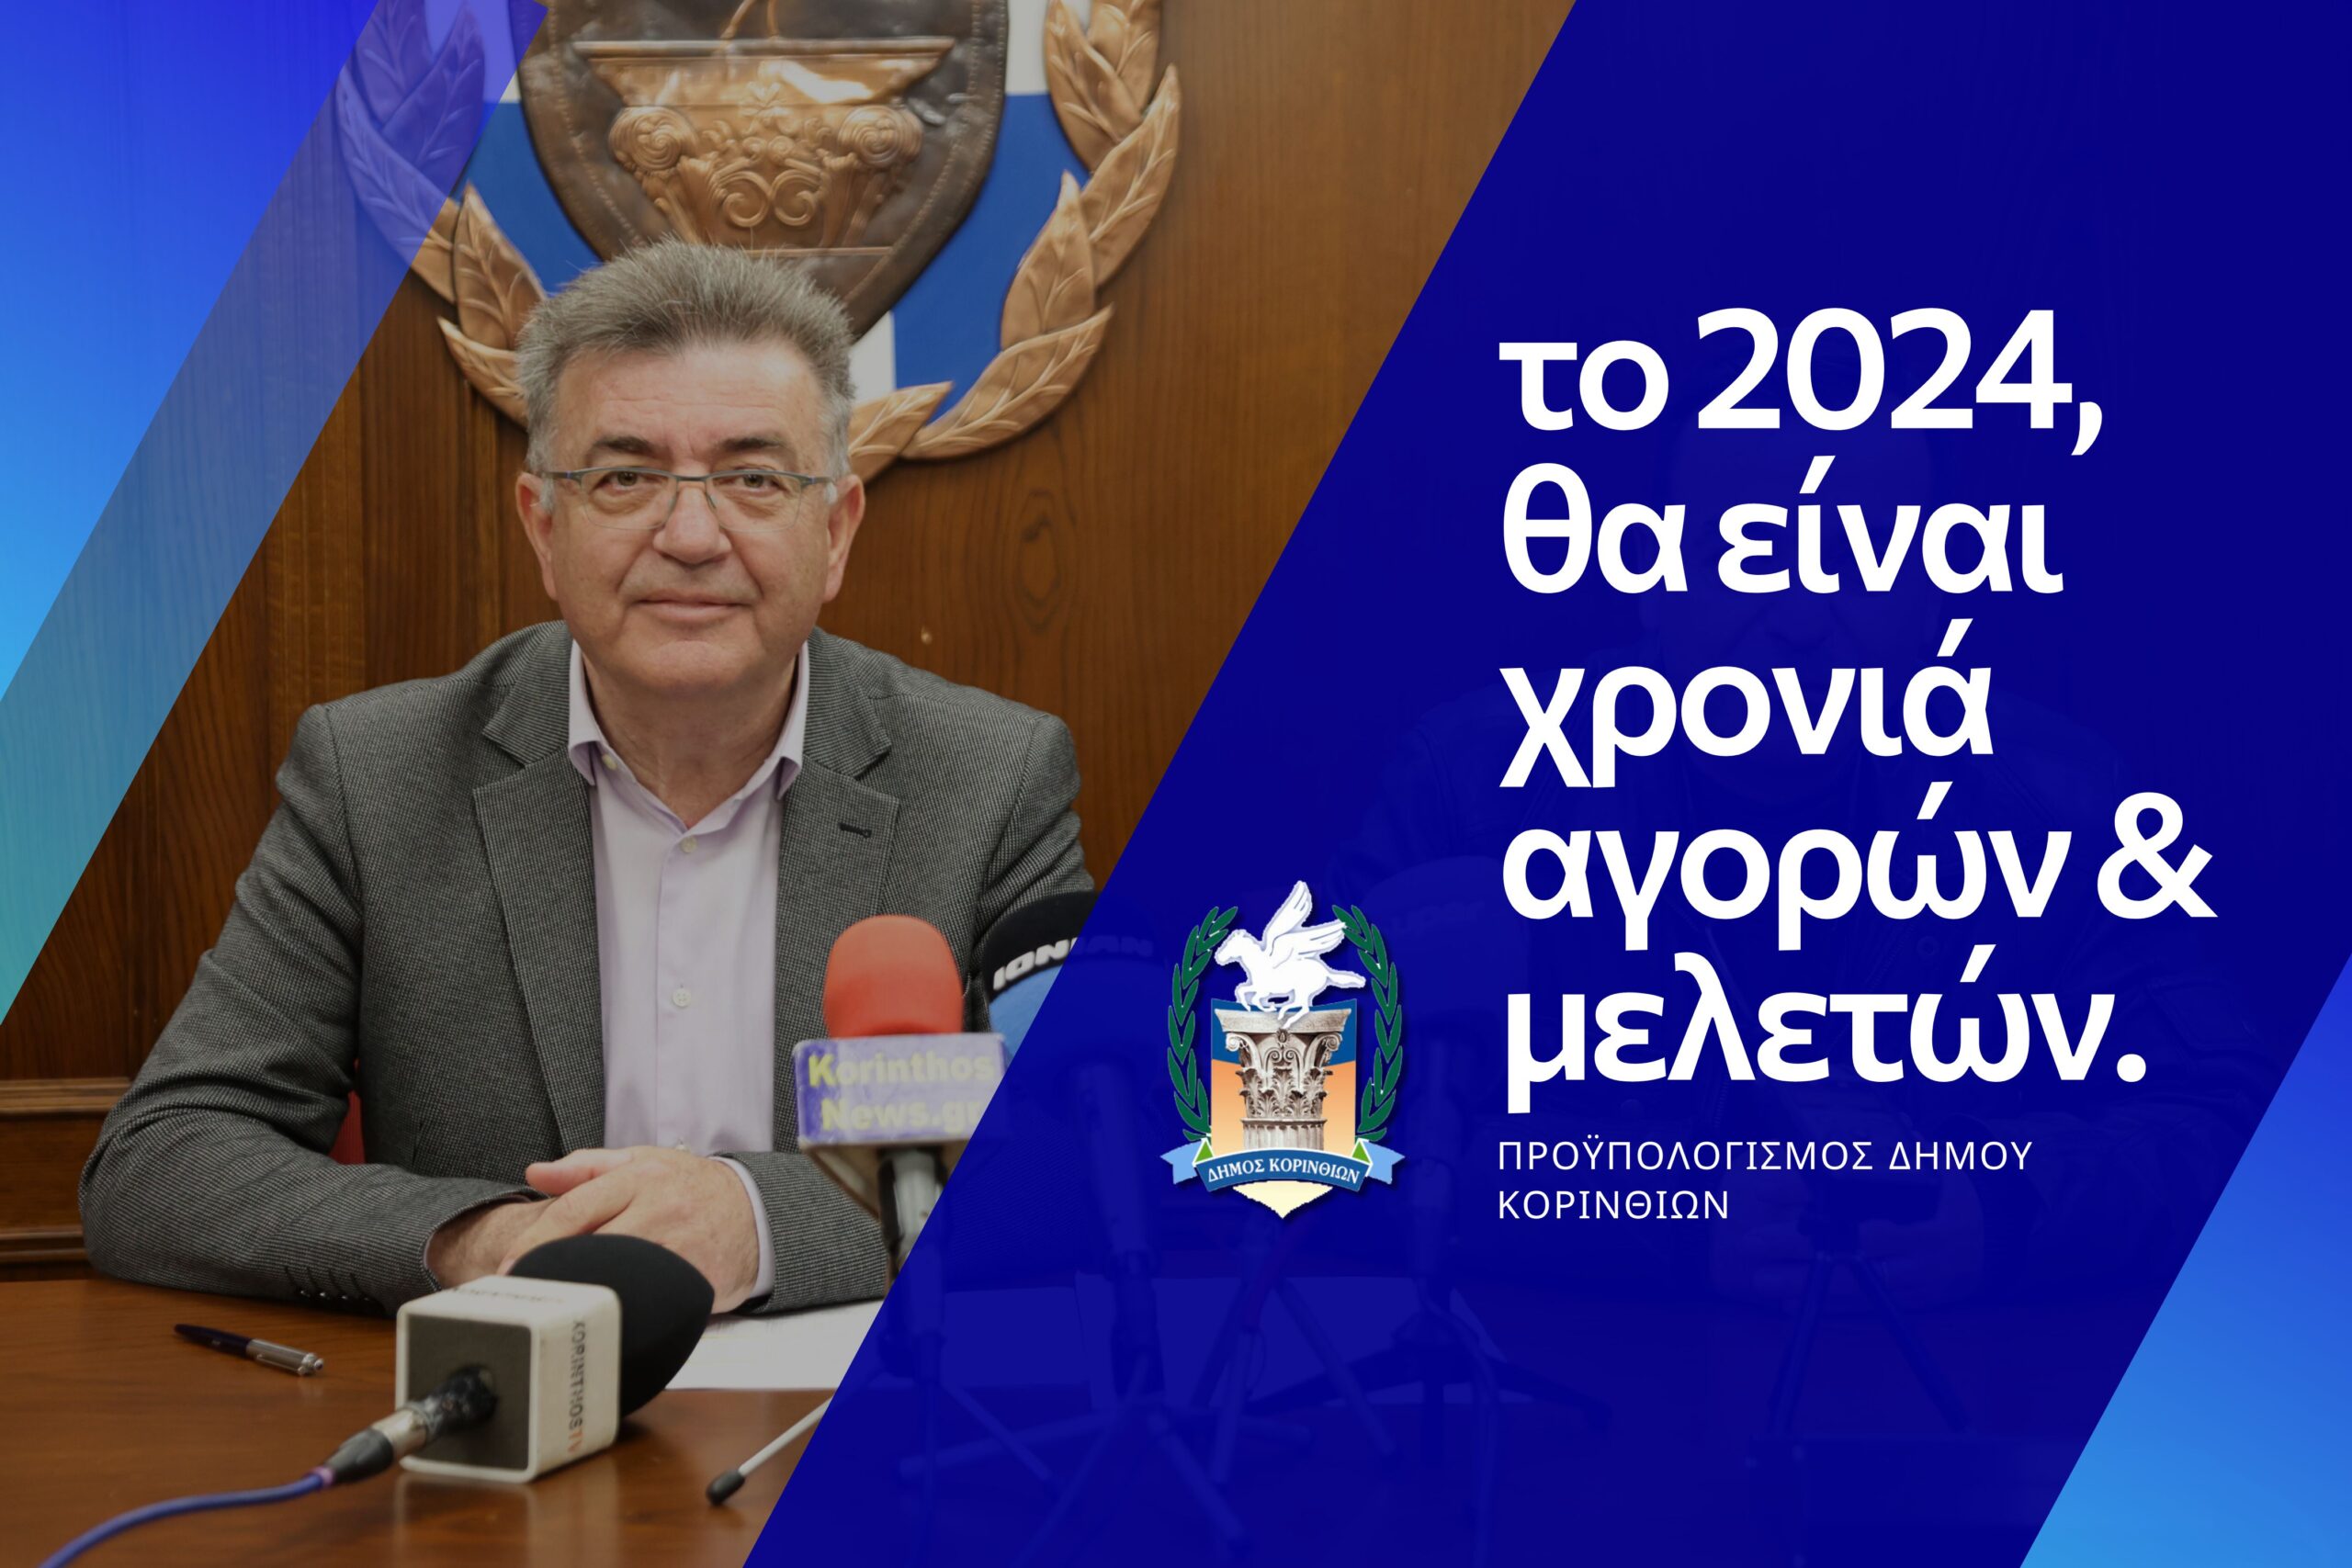 Ψηφίστηκε ο προϋπολογισμός του Δήμου Κορινθίων για το 2024 (video)